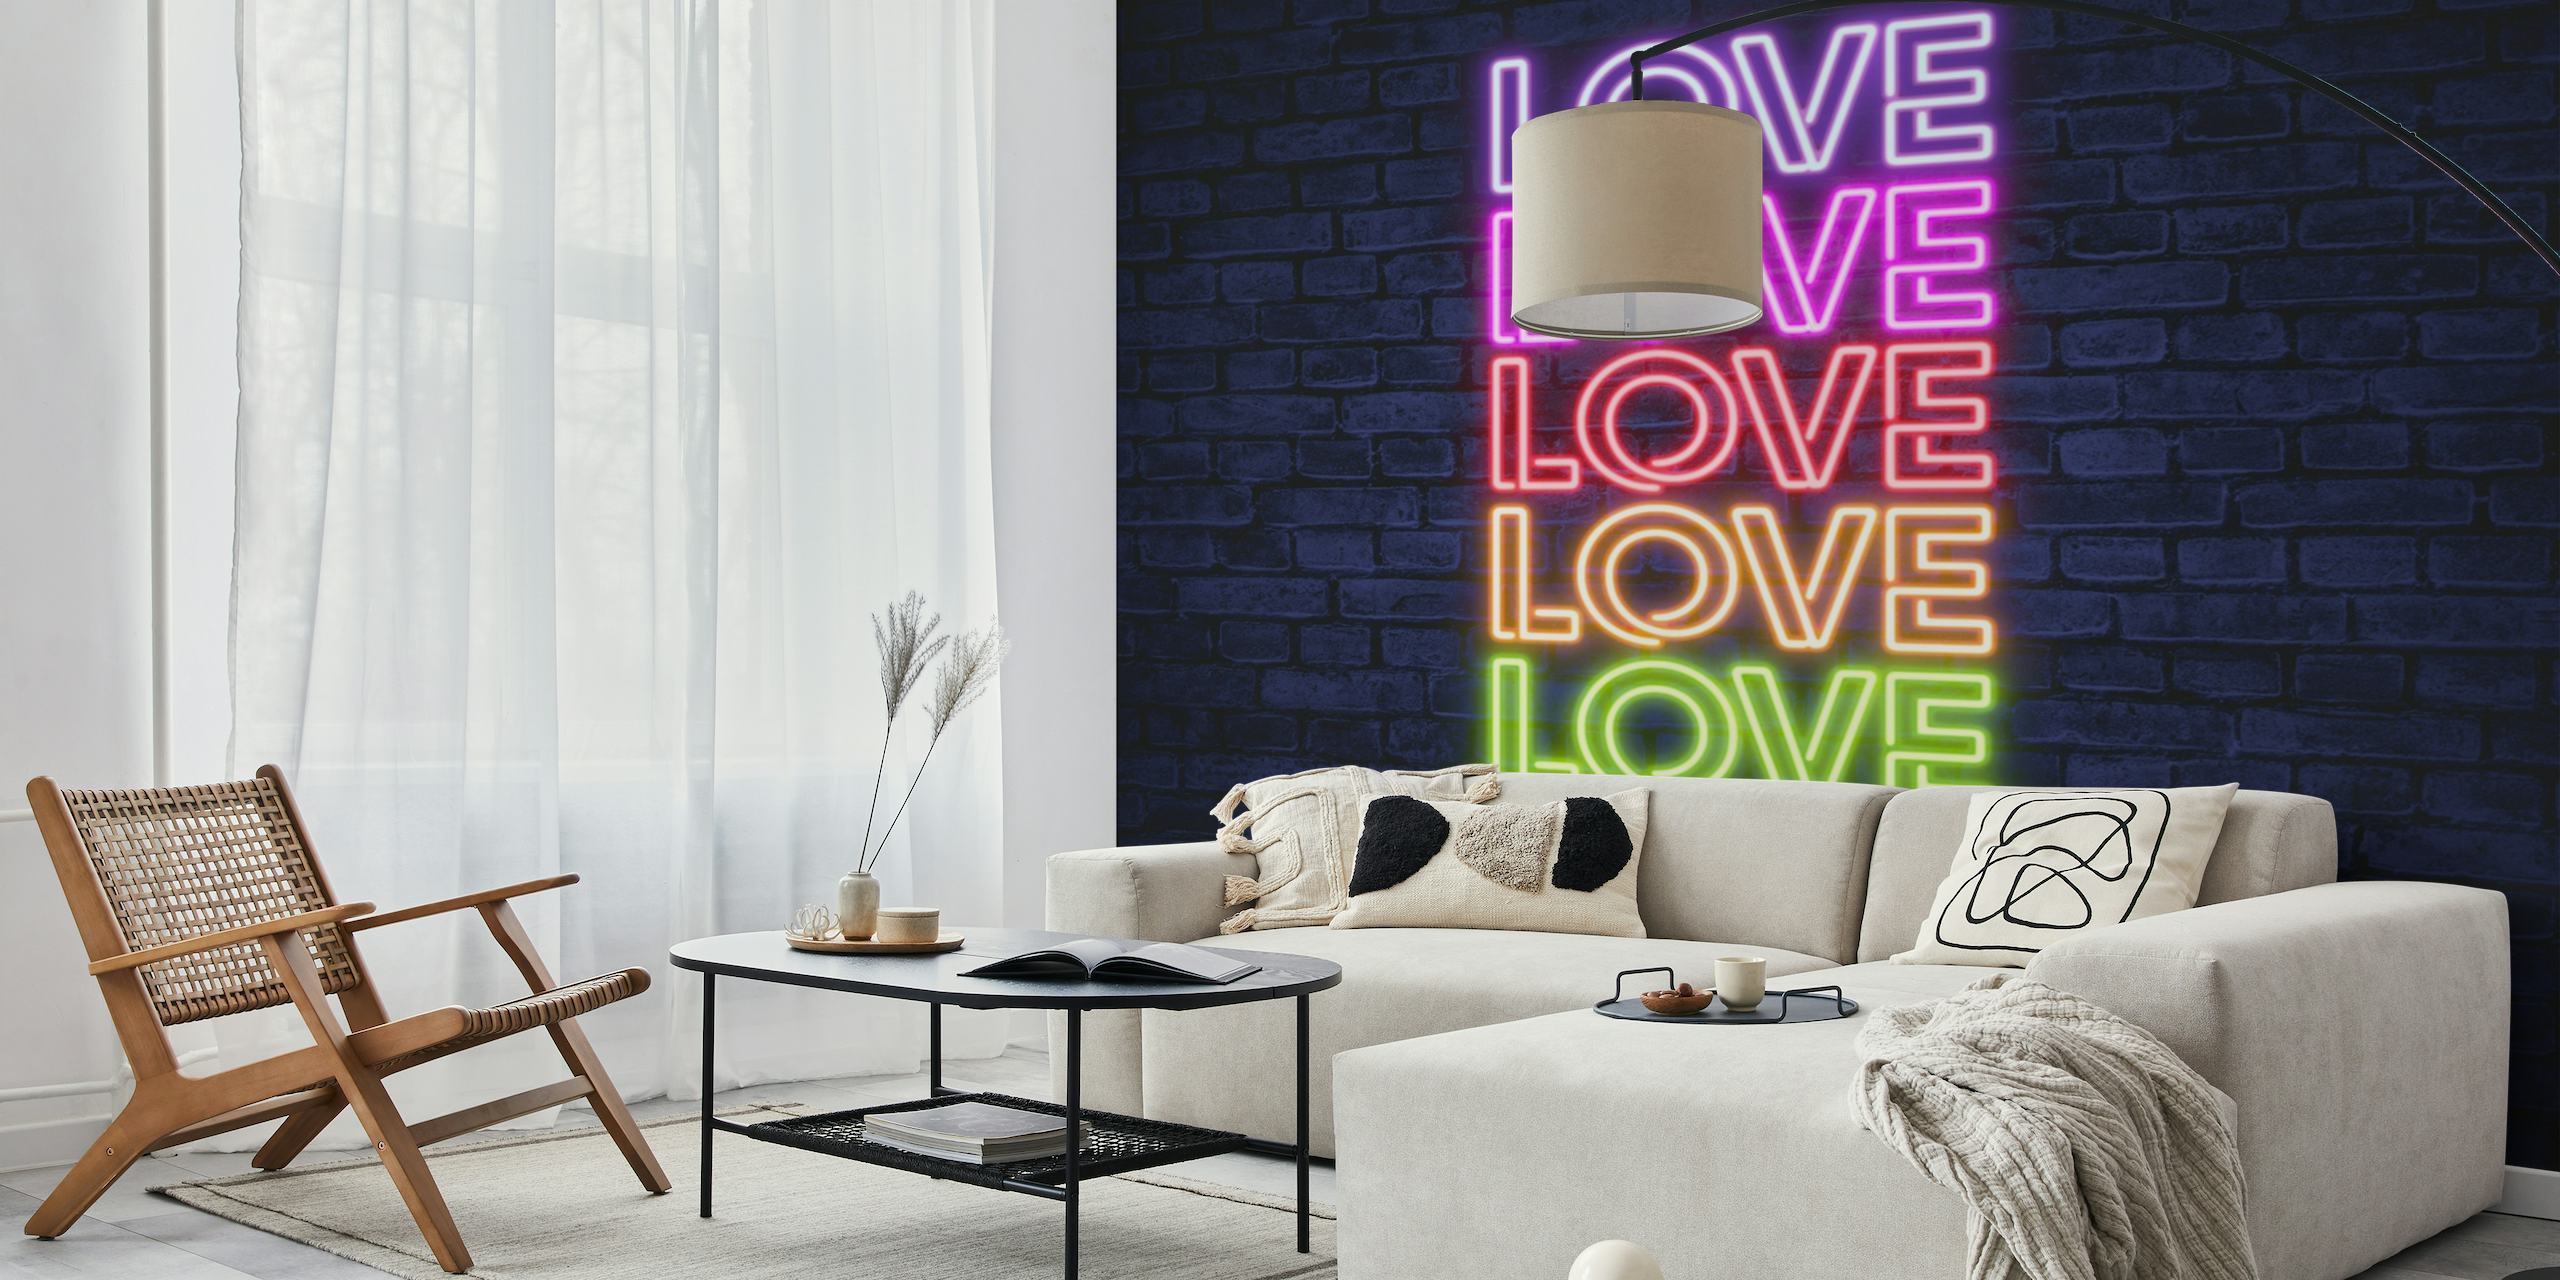 Neonowa typografia miłości w kolorze różowym, niebieskim i żółtym na fototapecie w tle ceglanej ściany